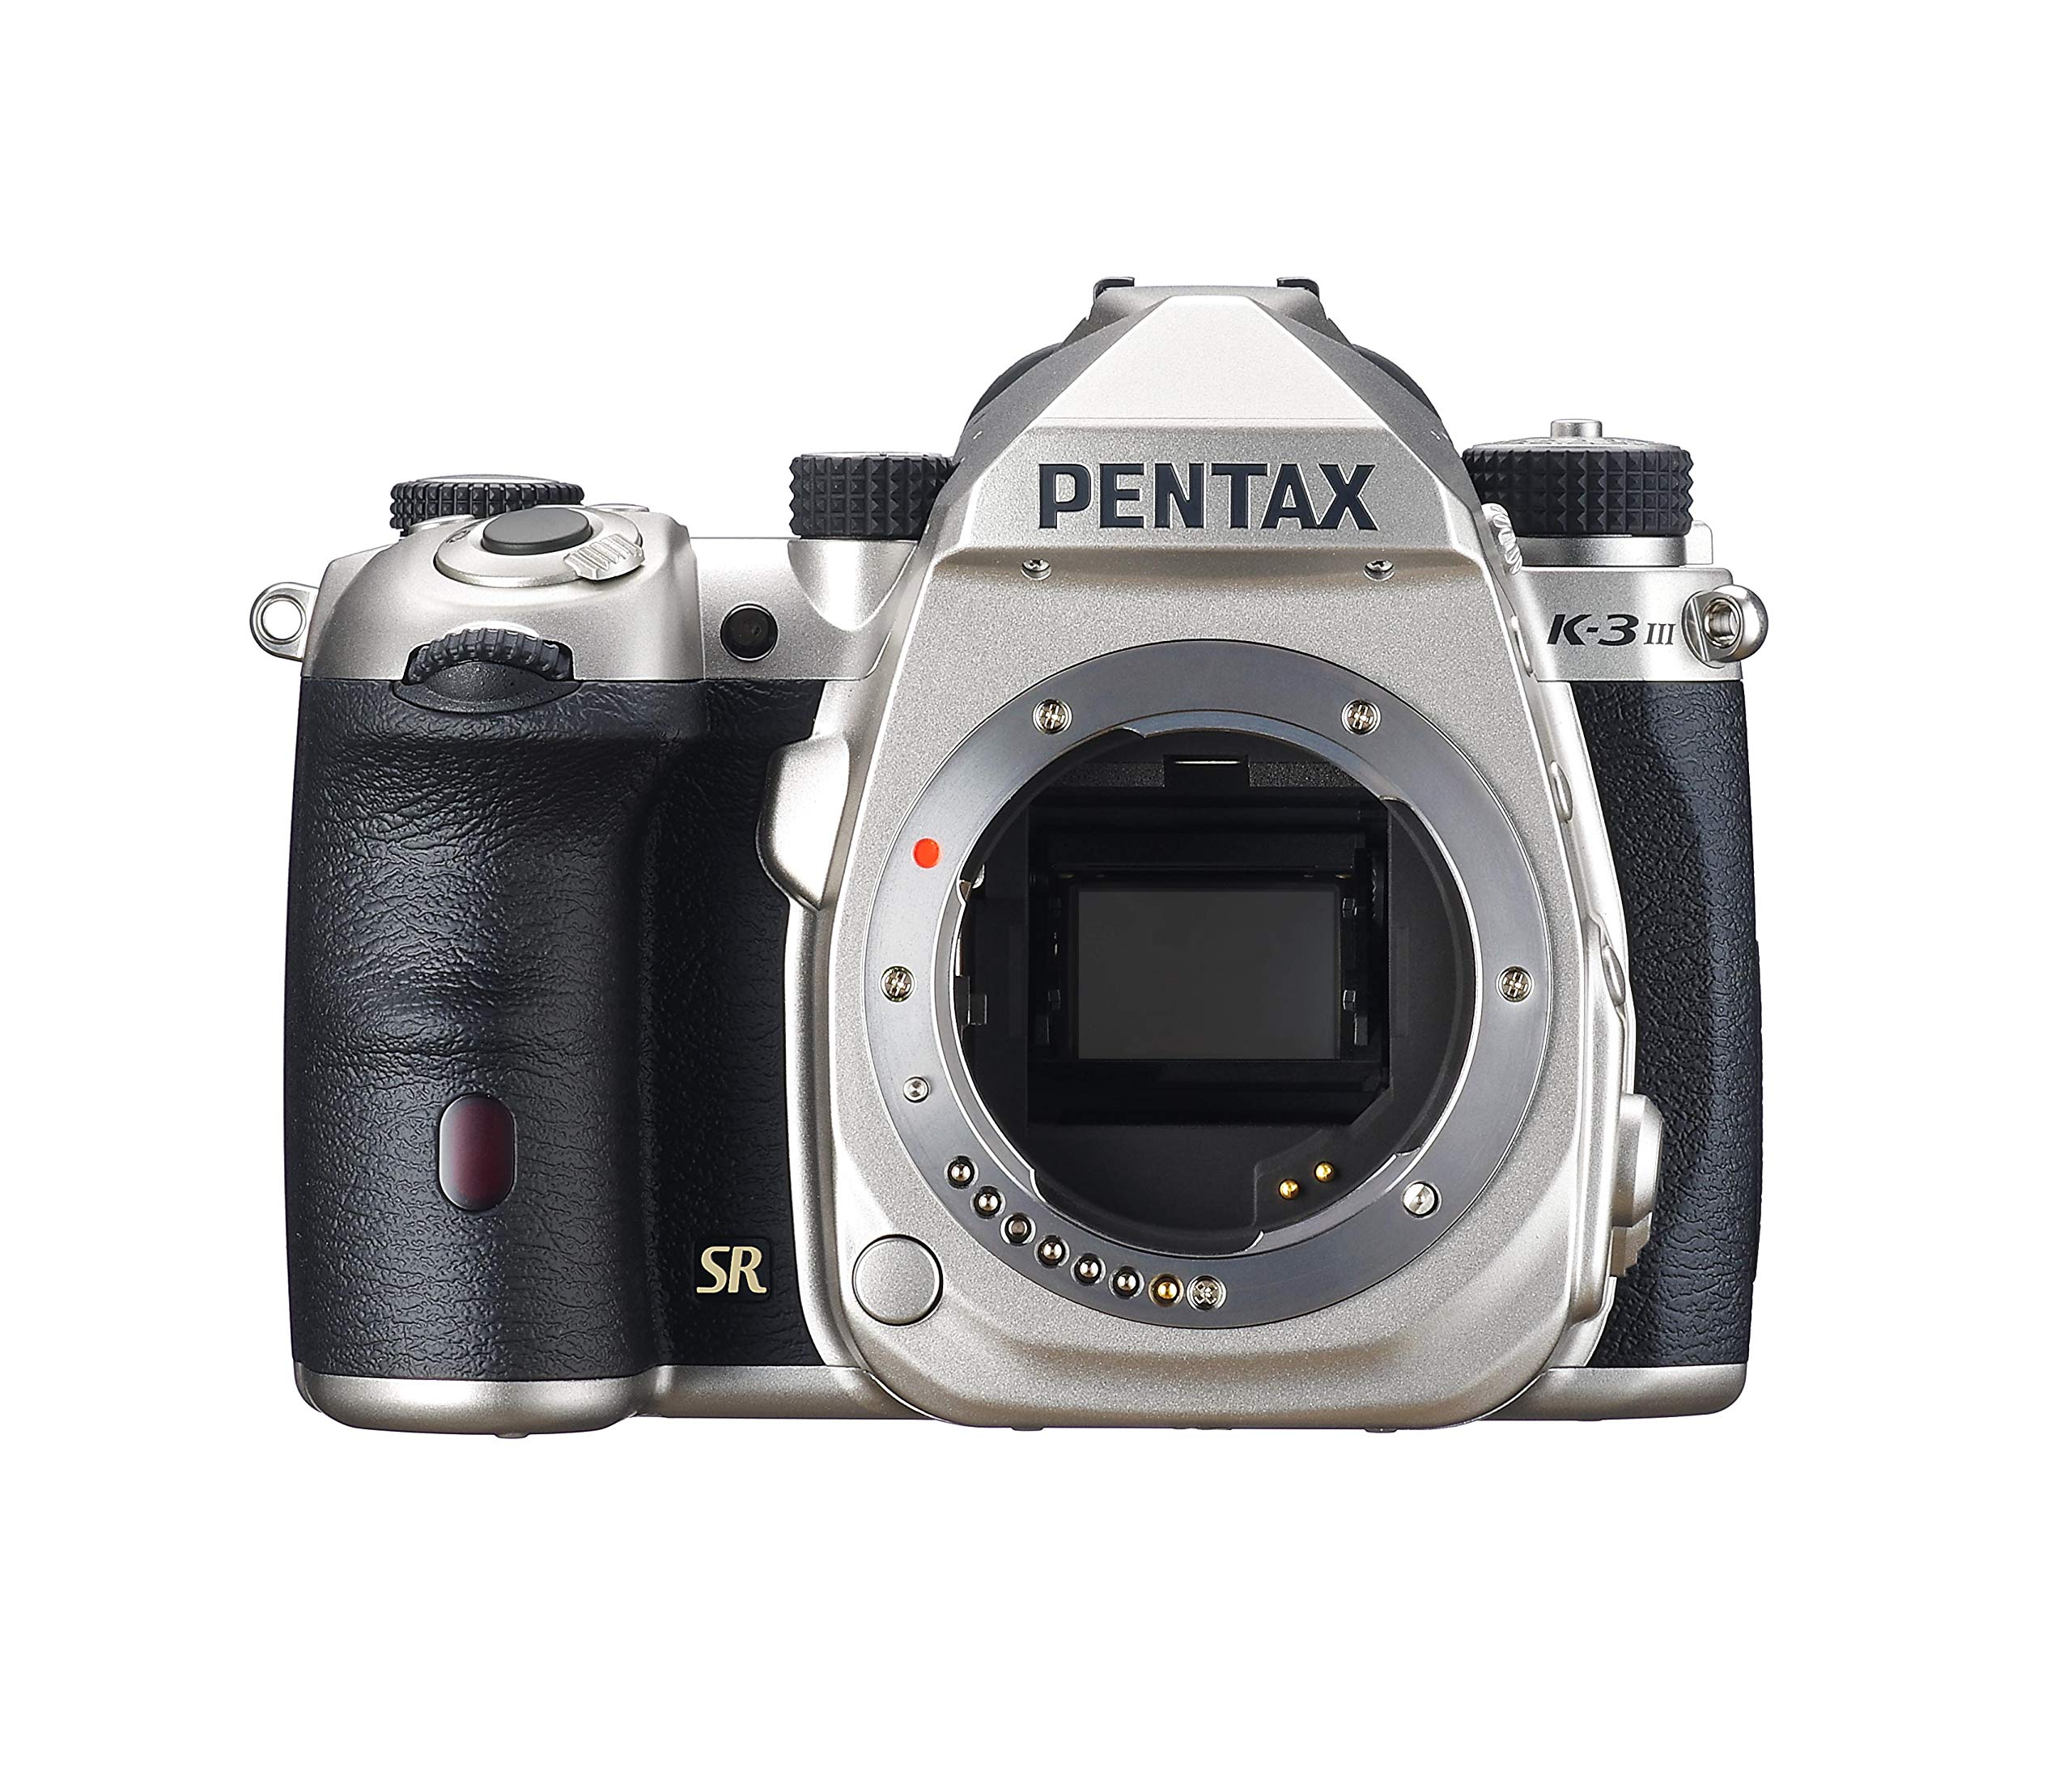 Pentax K-3 Mark III APS-C DSLR Kamera Gehäuse in Silber - Bildfeld 100%~1,05x optischer Sucher, 5-Achsen 5,5 Stufen In-Body SR Mechanismus, ISO 1,6 Millionen, wetterfest, bis zu 12fps, Touchscreen